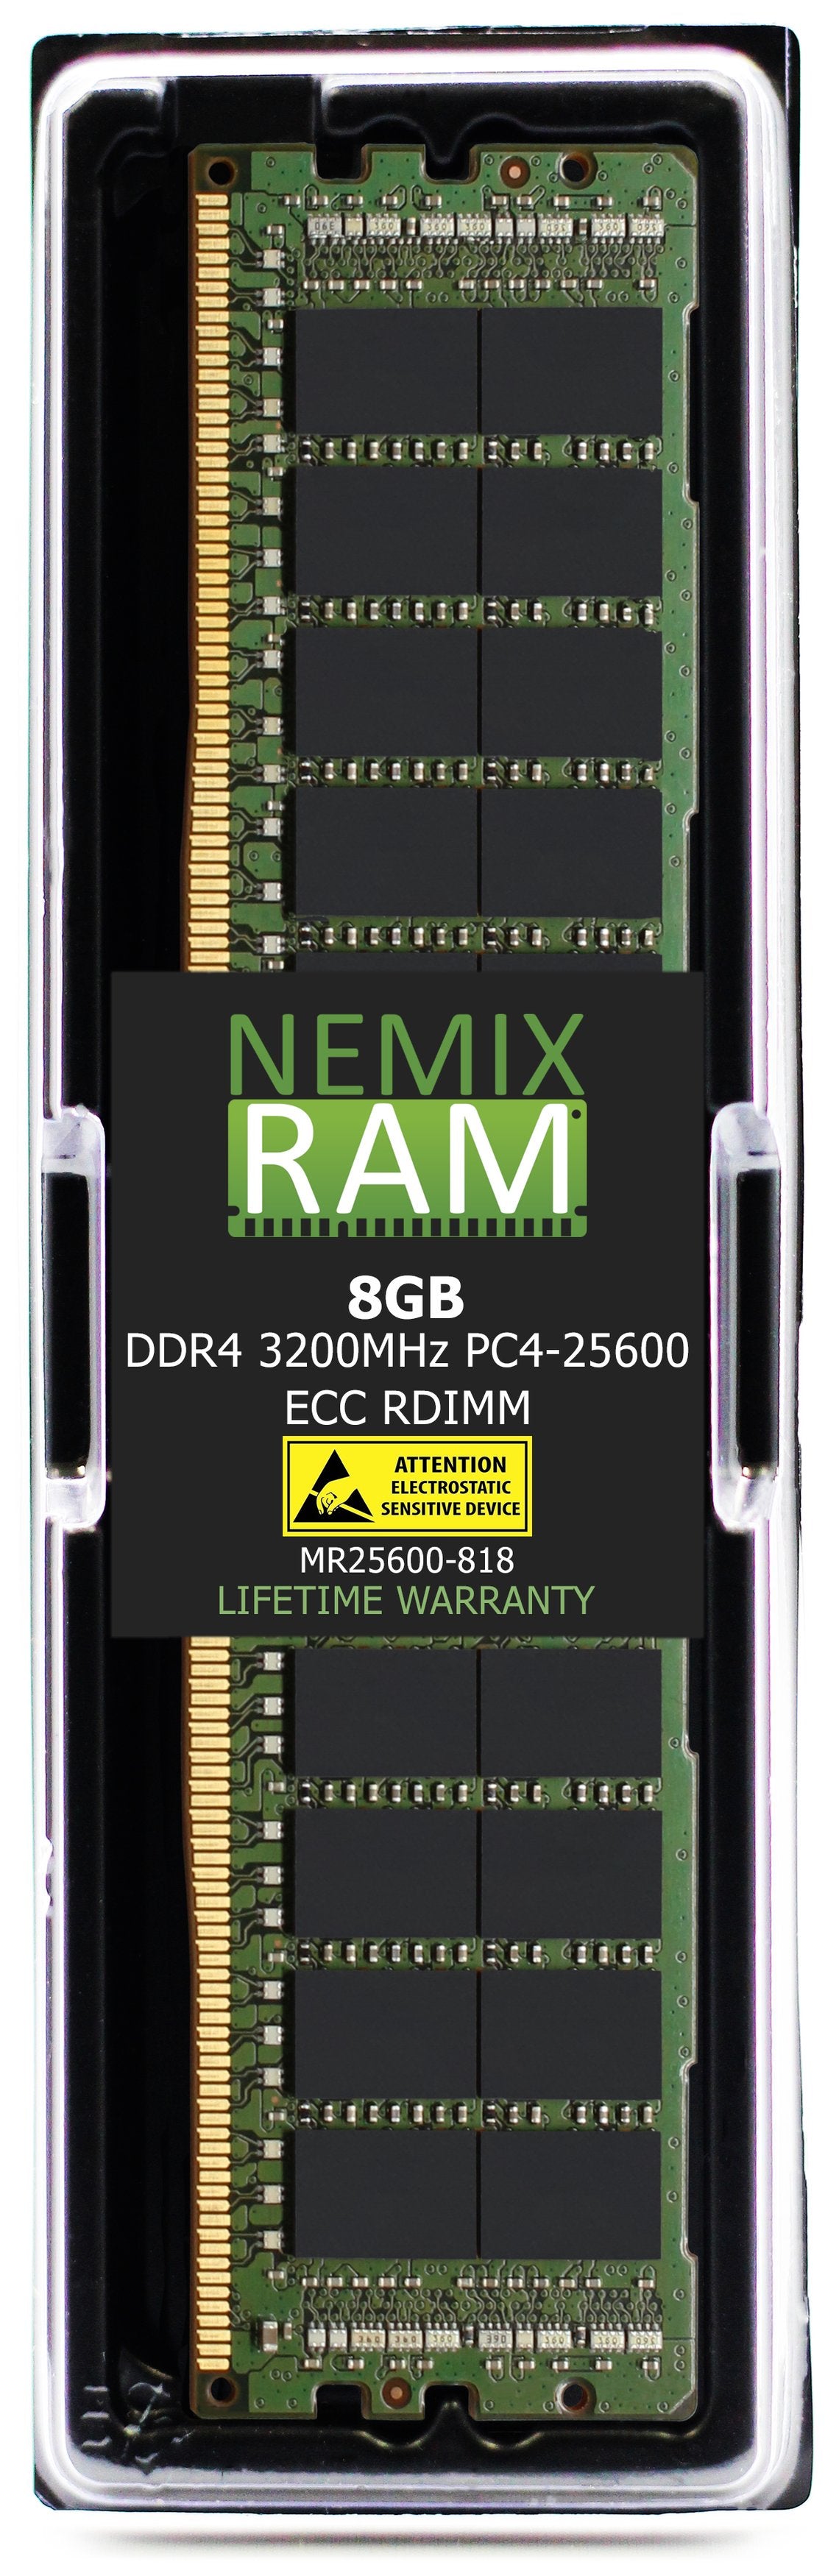 Hynix HMA81GR7CJR8N-XN 8GB DDR4 3200MHZ PC4-25600 RDIMM Compatible Memory Module